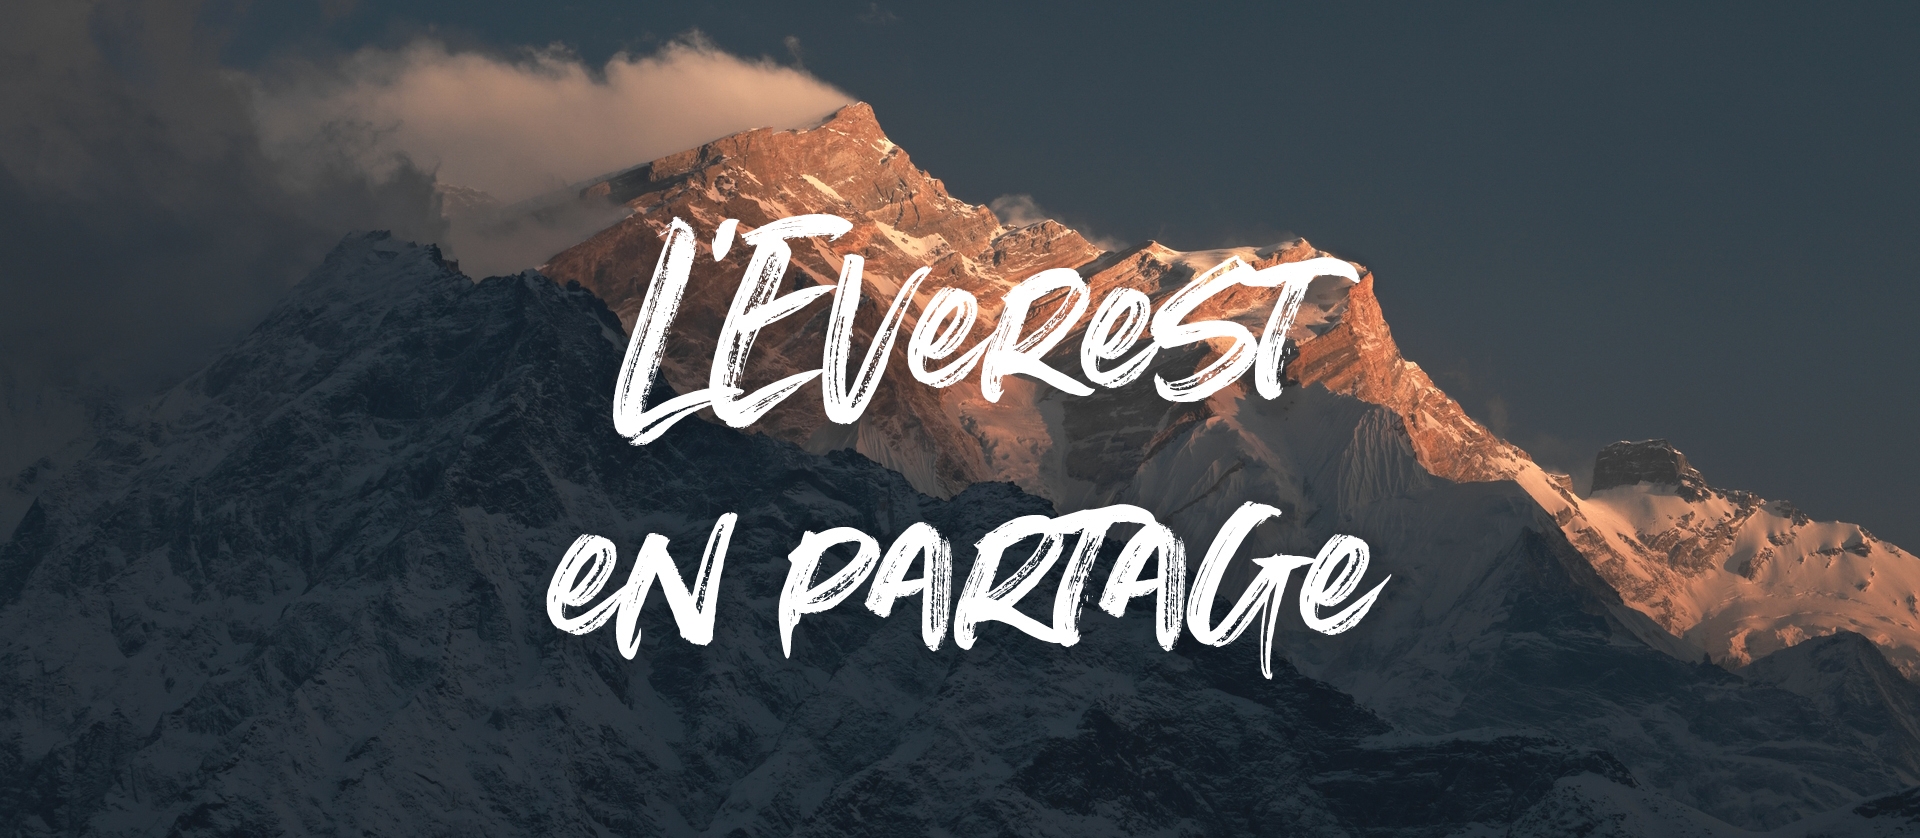  - Carbone Zéro lance une campagne de crowdfunding pour le film documentaire  L'Everest en partage 